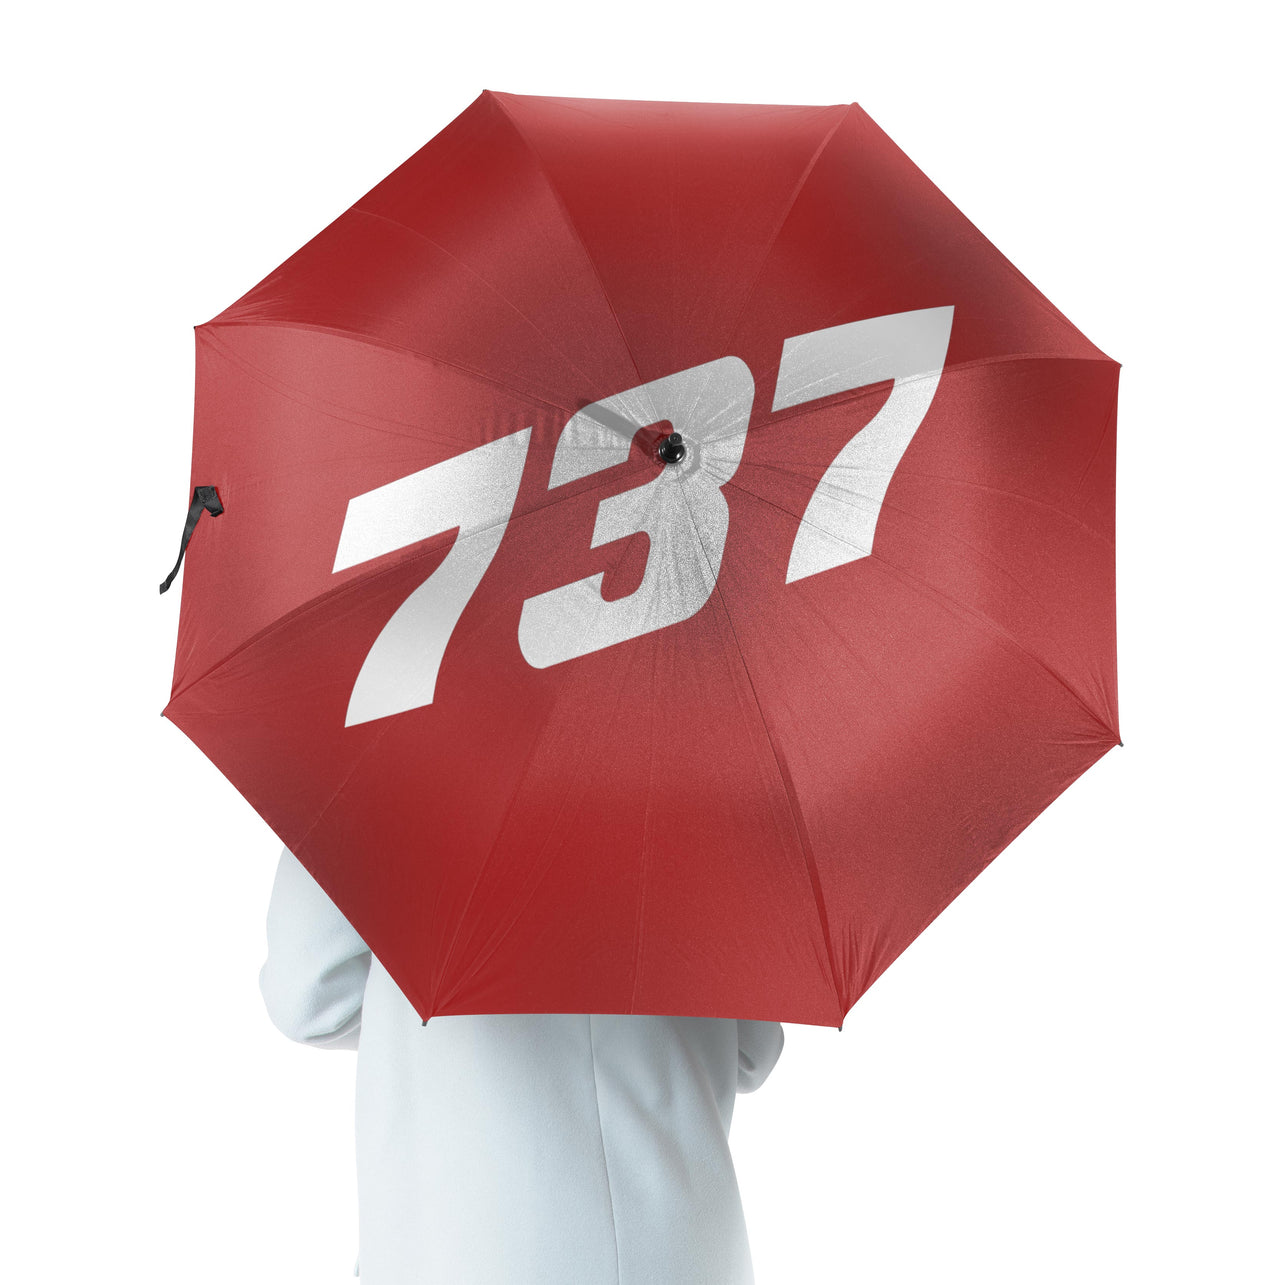 737 Flat Text Designed Umbrella